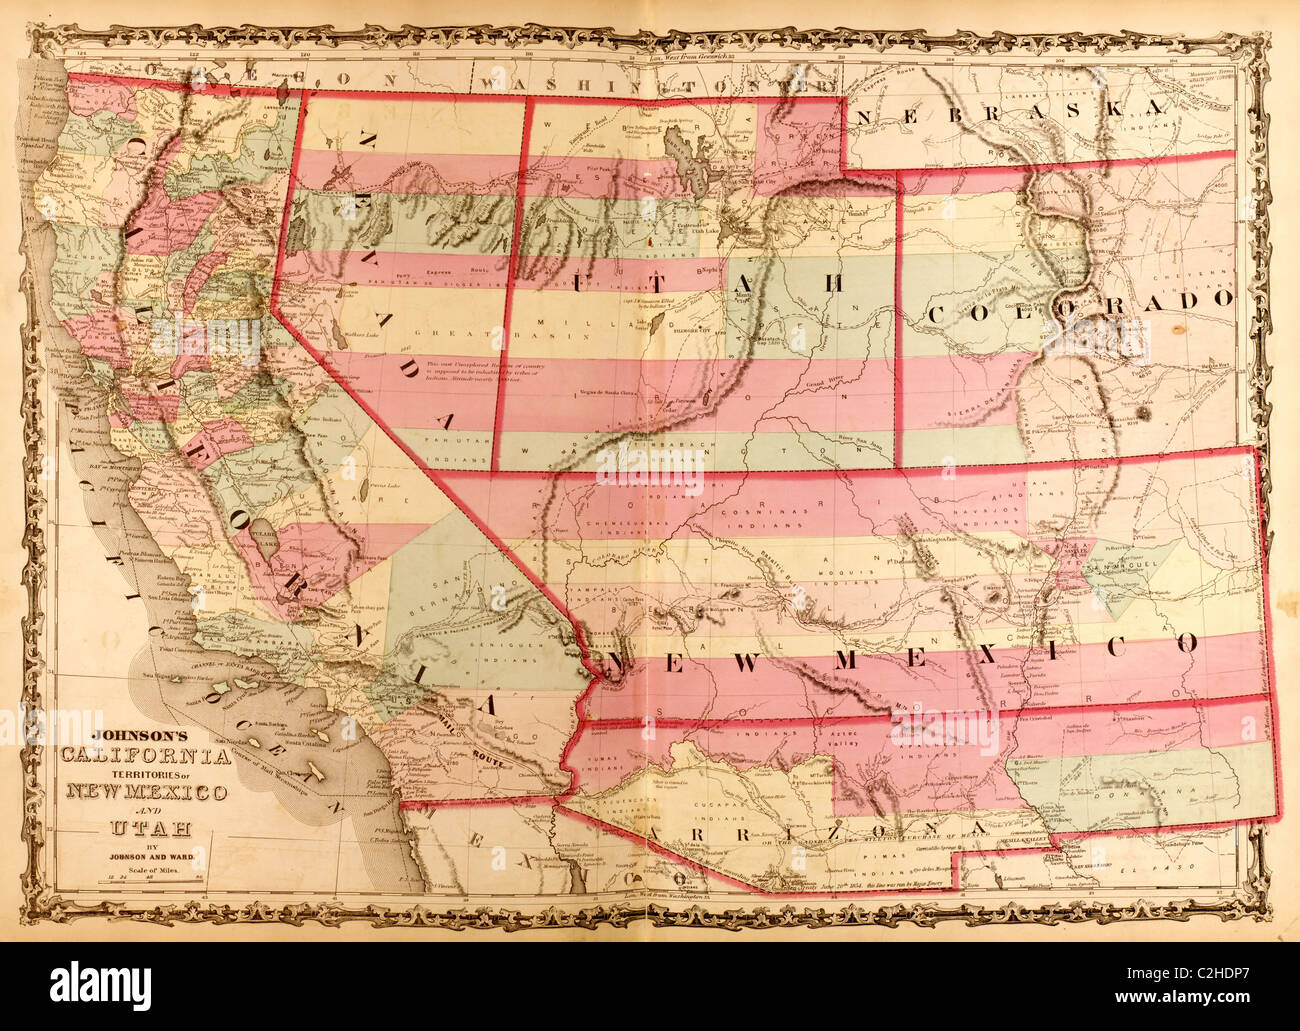 La Californie et les territoires de l'Utah et Mexique - 1862 Banque D'Images